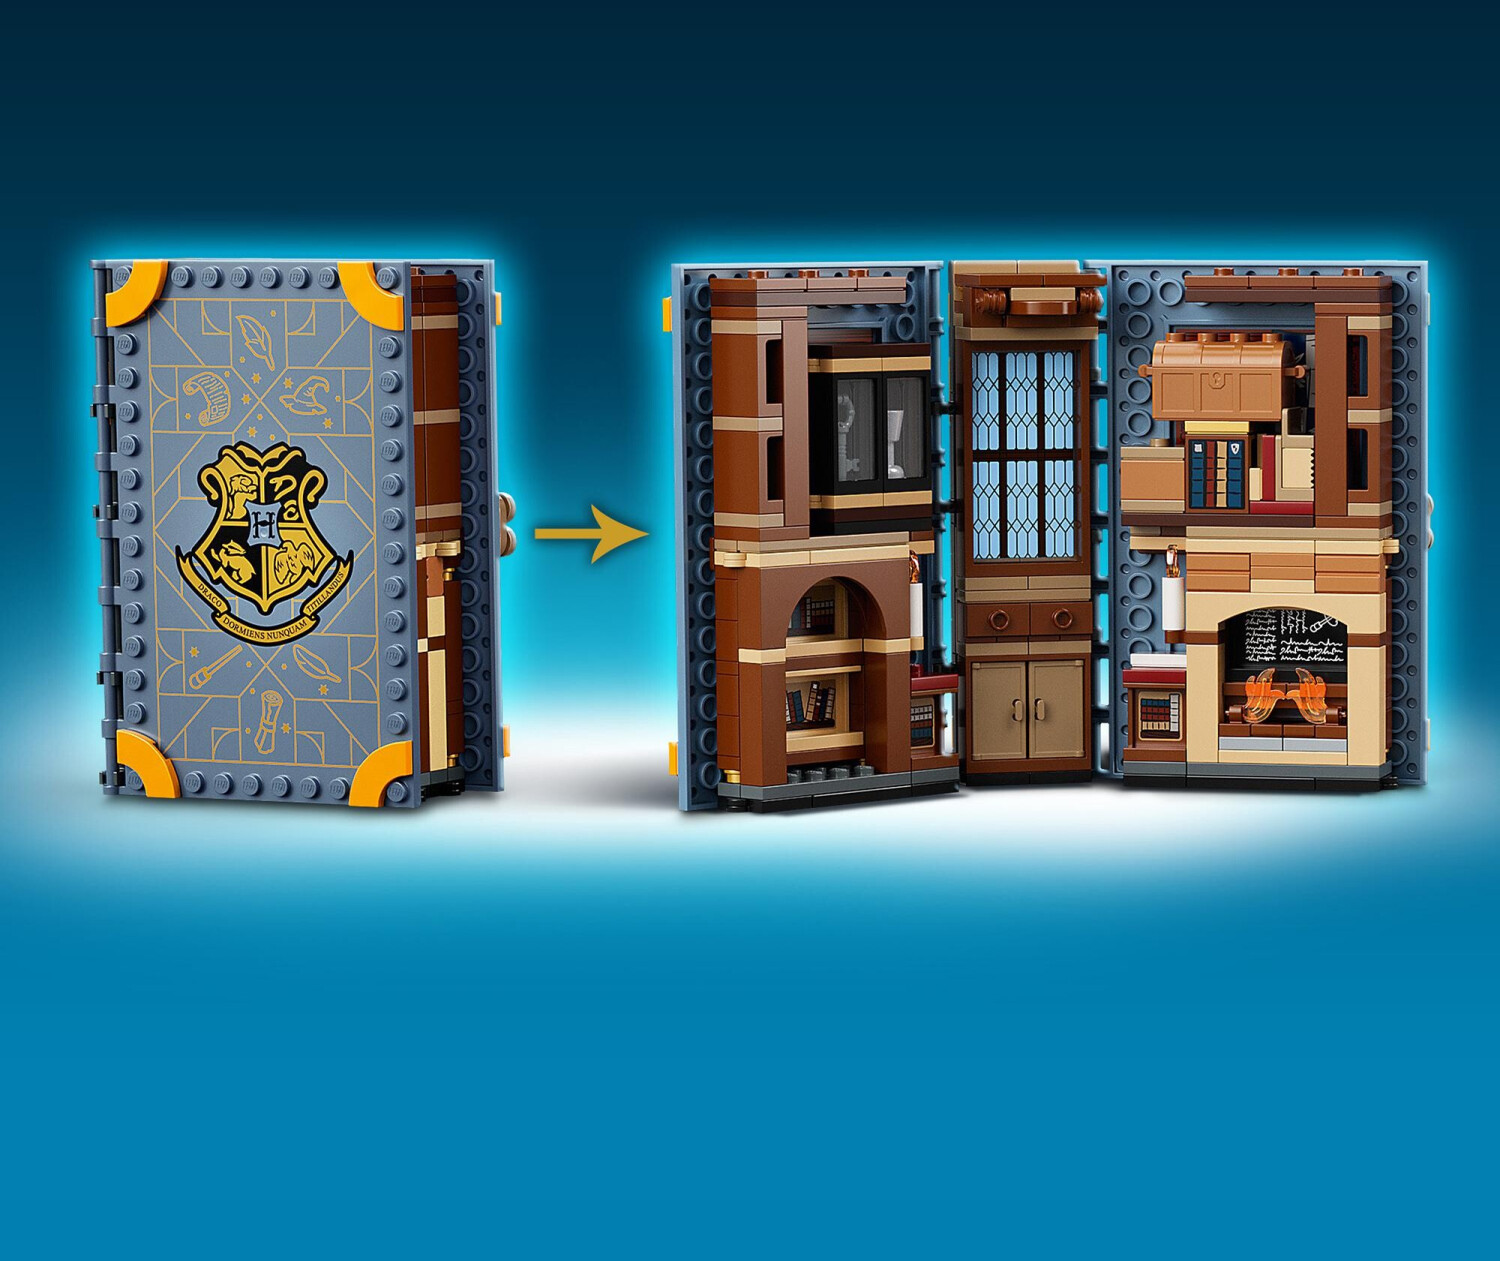 LEGO Harry Potter 76385 Poudlard : le cours de sortilèges